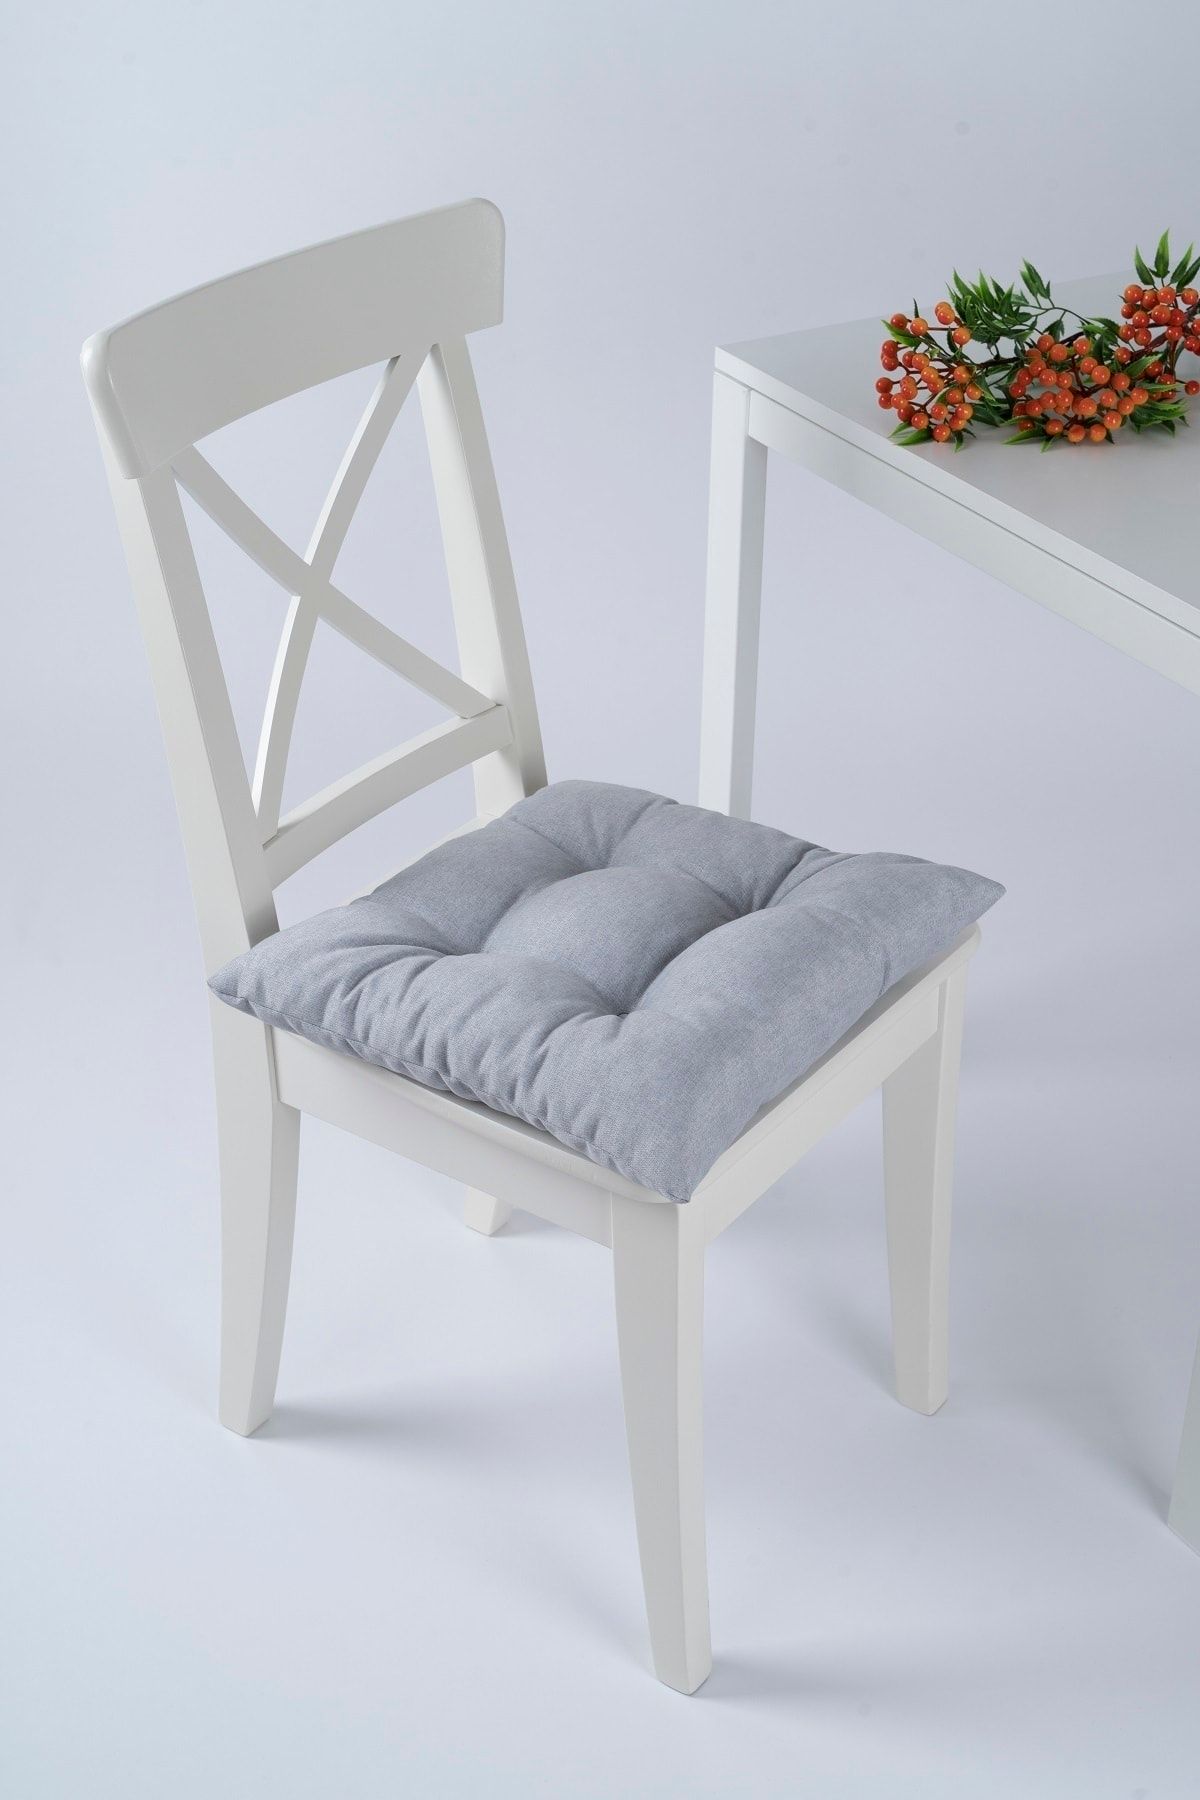 ALTINPAMUK Beta Pofidik Gri Sandalye Minderi Bağcıklı 40x40cm